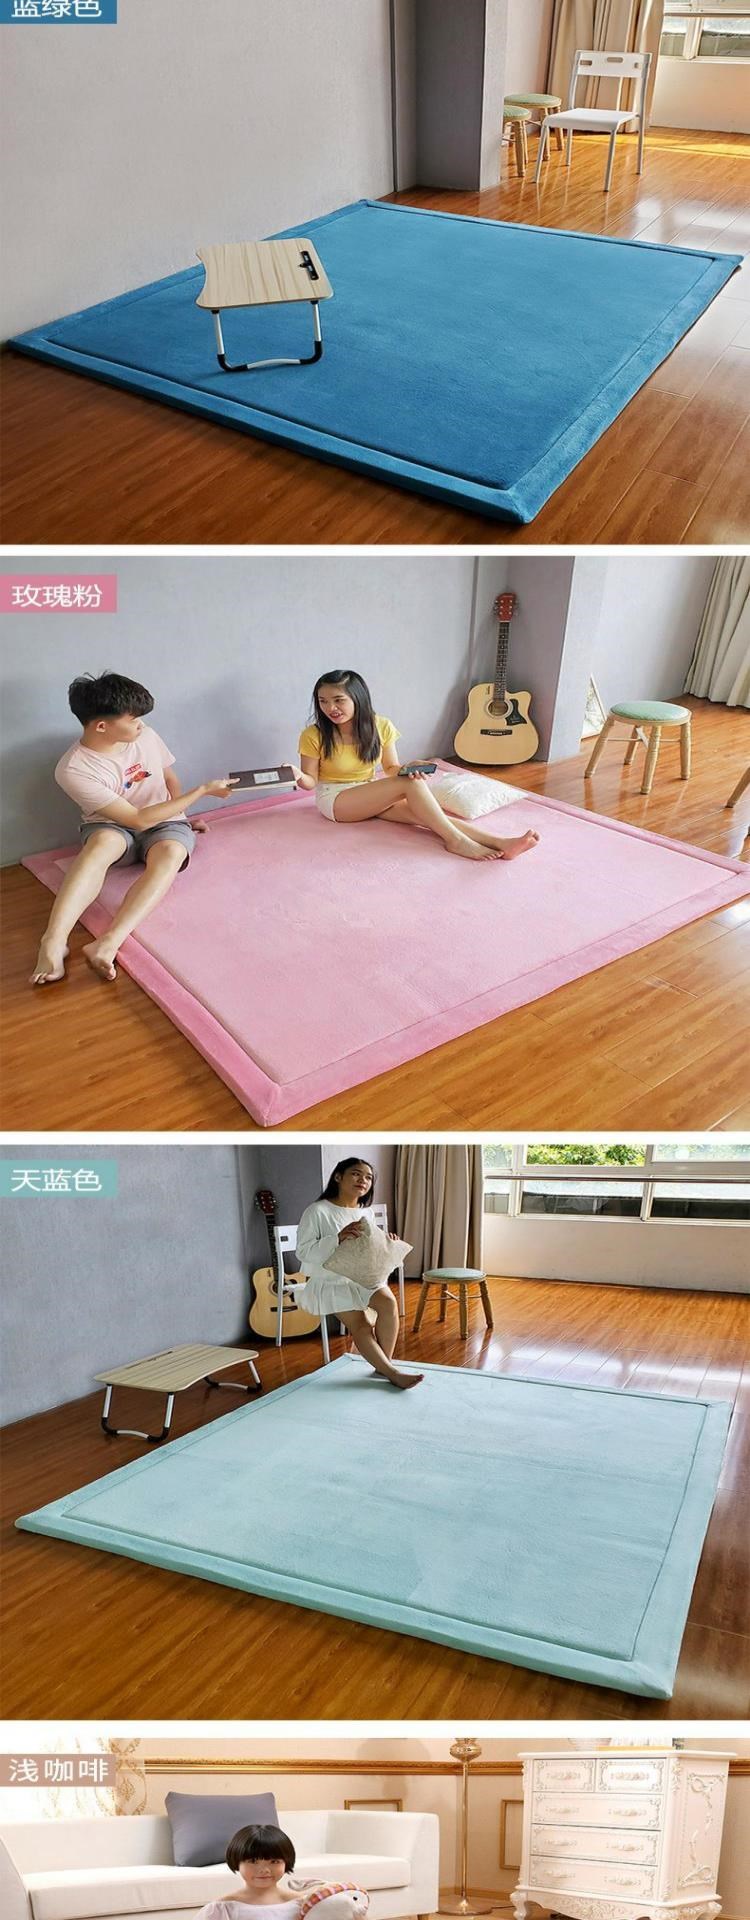 2020 mới tùy chỉnh tatami kang chăn phòng ngủ giường phòng khách thảm trẻ em dễ thương bé bò thảm đi văng - Thảm